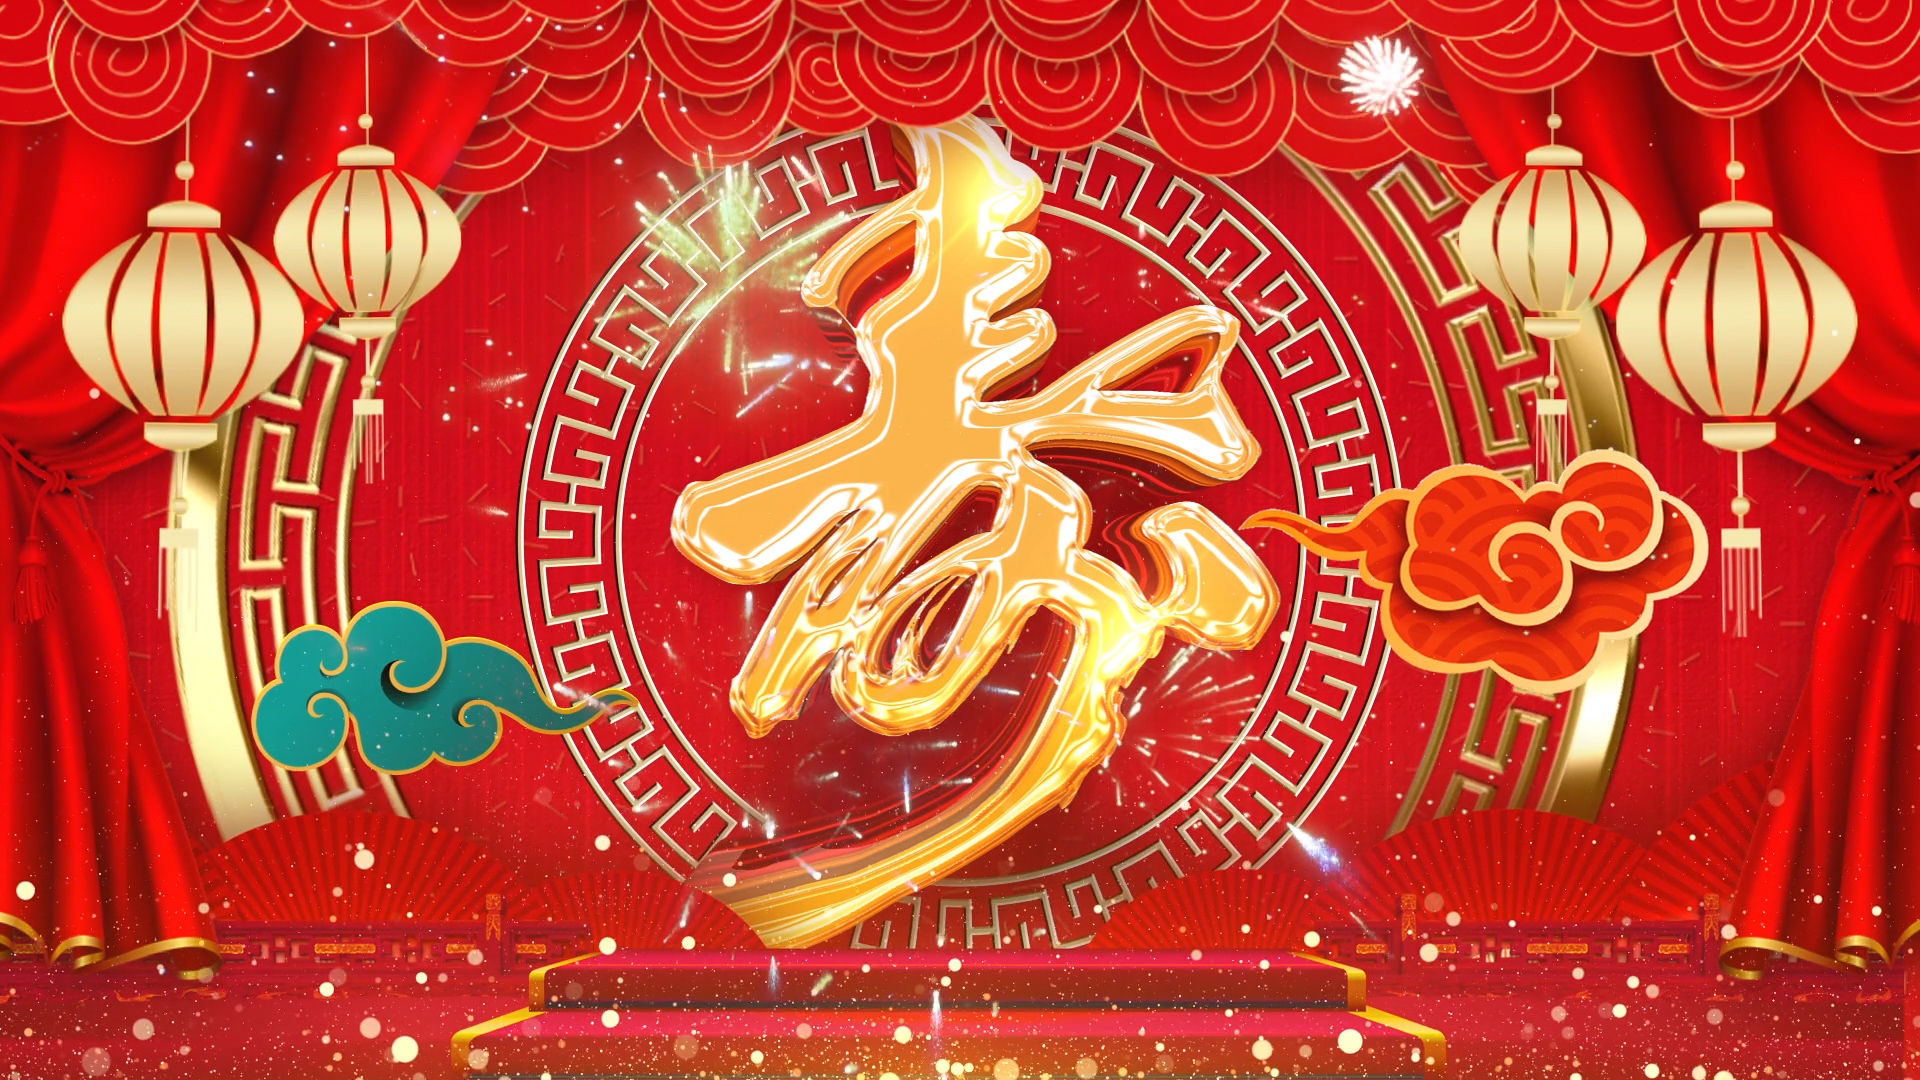 中国风红色喜庆祝寿戏曲led背景视频